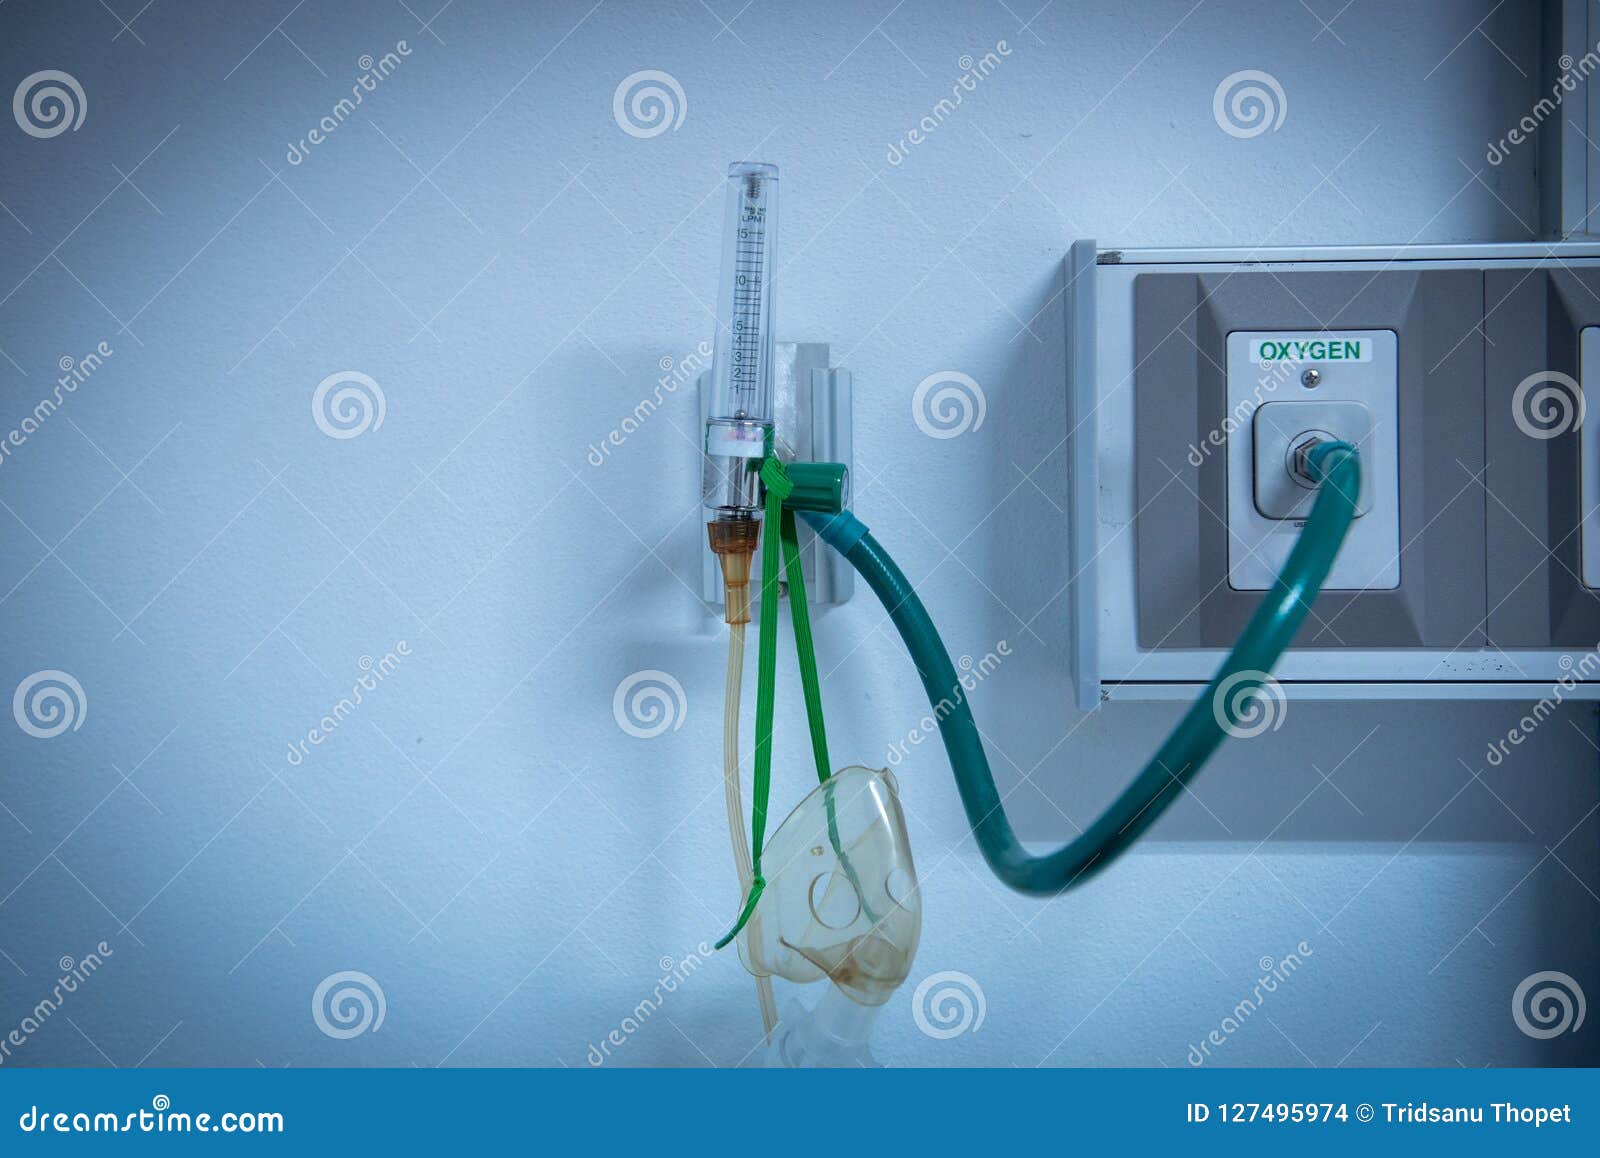 Отключение кислорода. Трубка в палате кислород. Кислородный трубопровод в больнице. Трубки для подачи кислорода в палаты. Аппарат подачи кислорода в больнице.